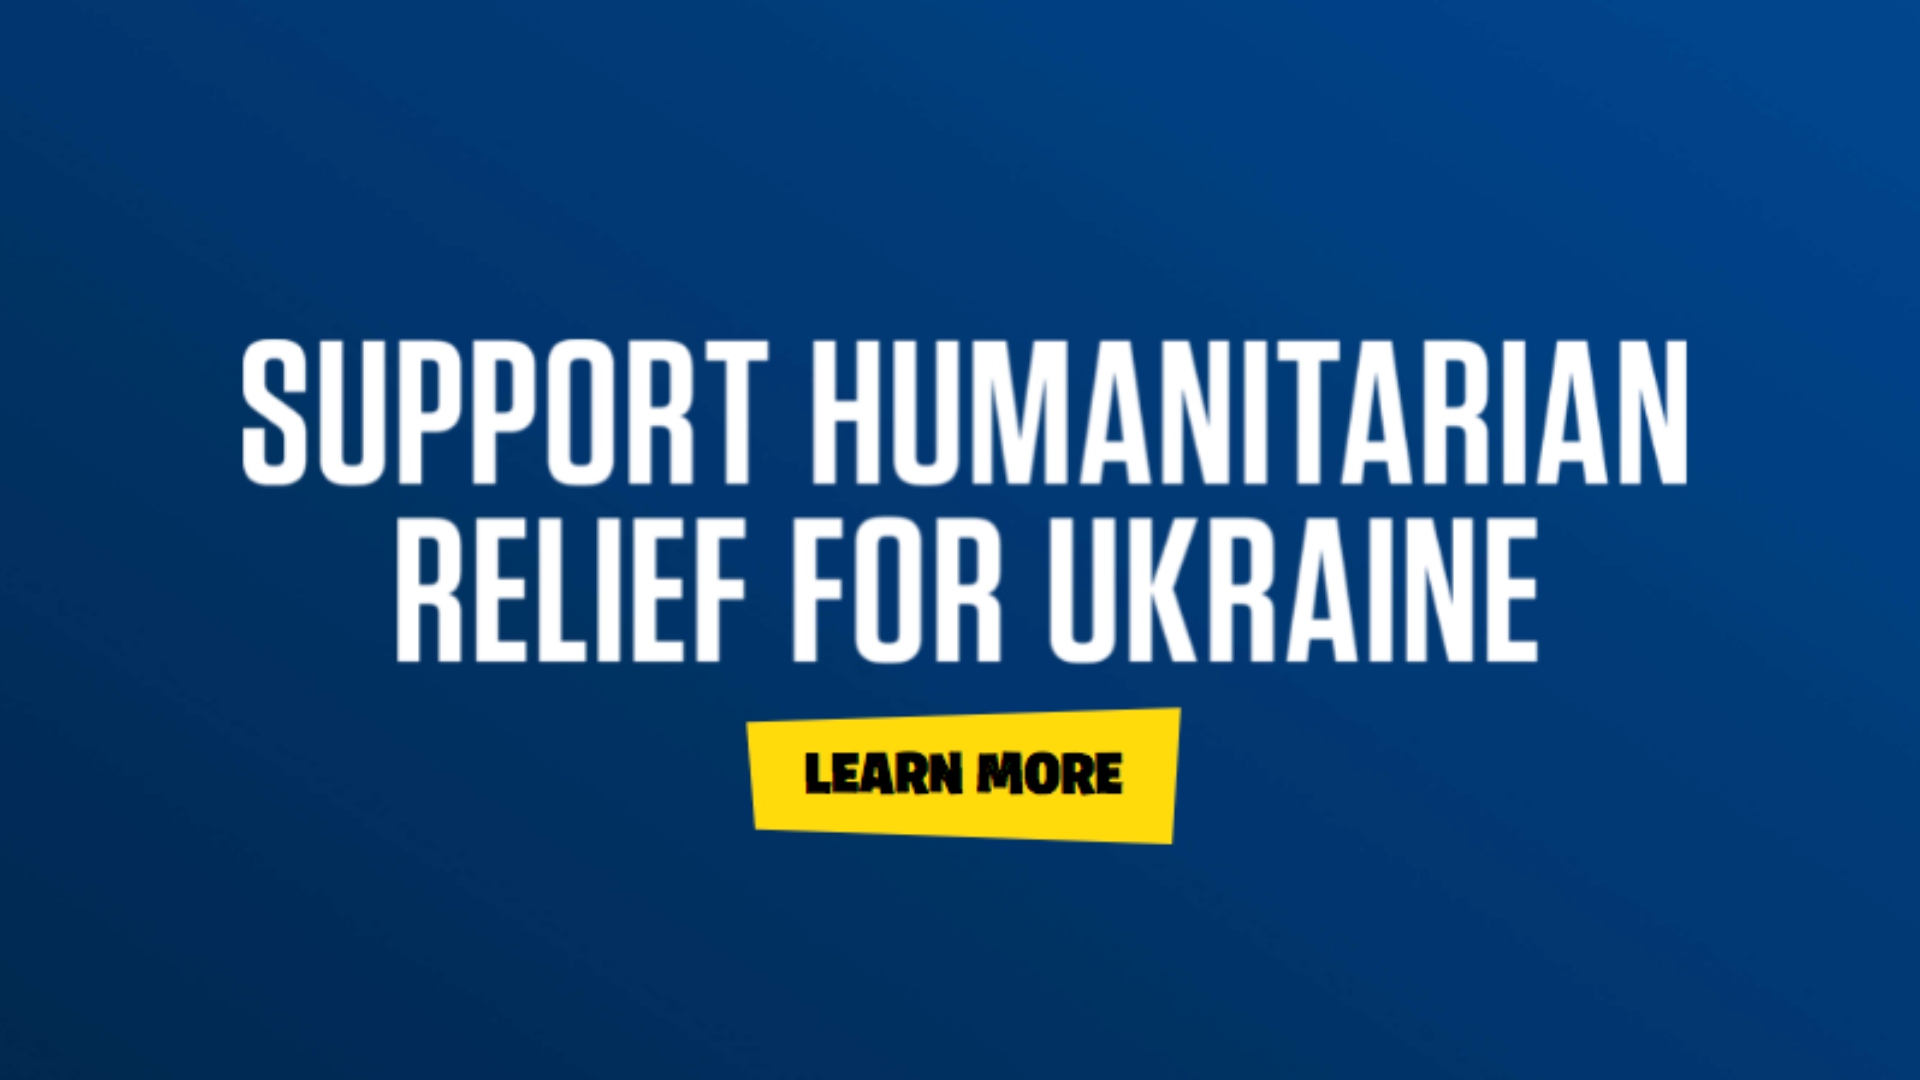 Empresa criou campanha que vai usar recursos de seu jogo Fortnite para ajuda humanitária aos ucranianos.